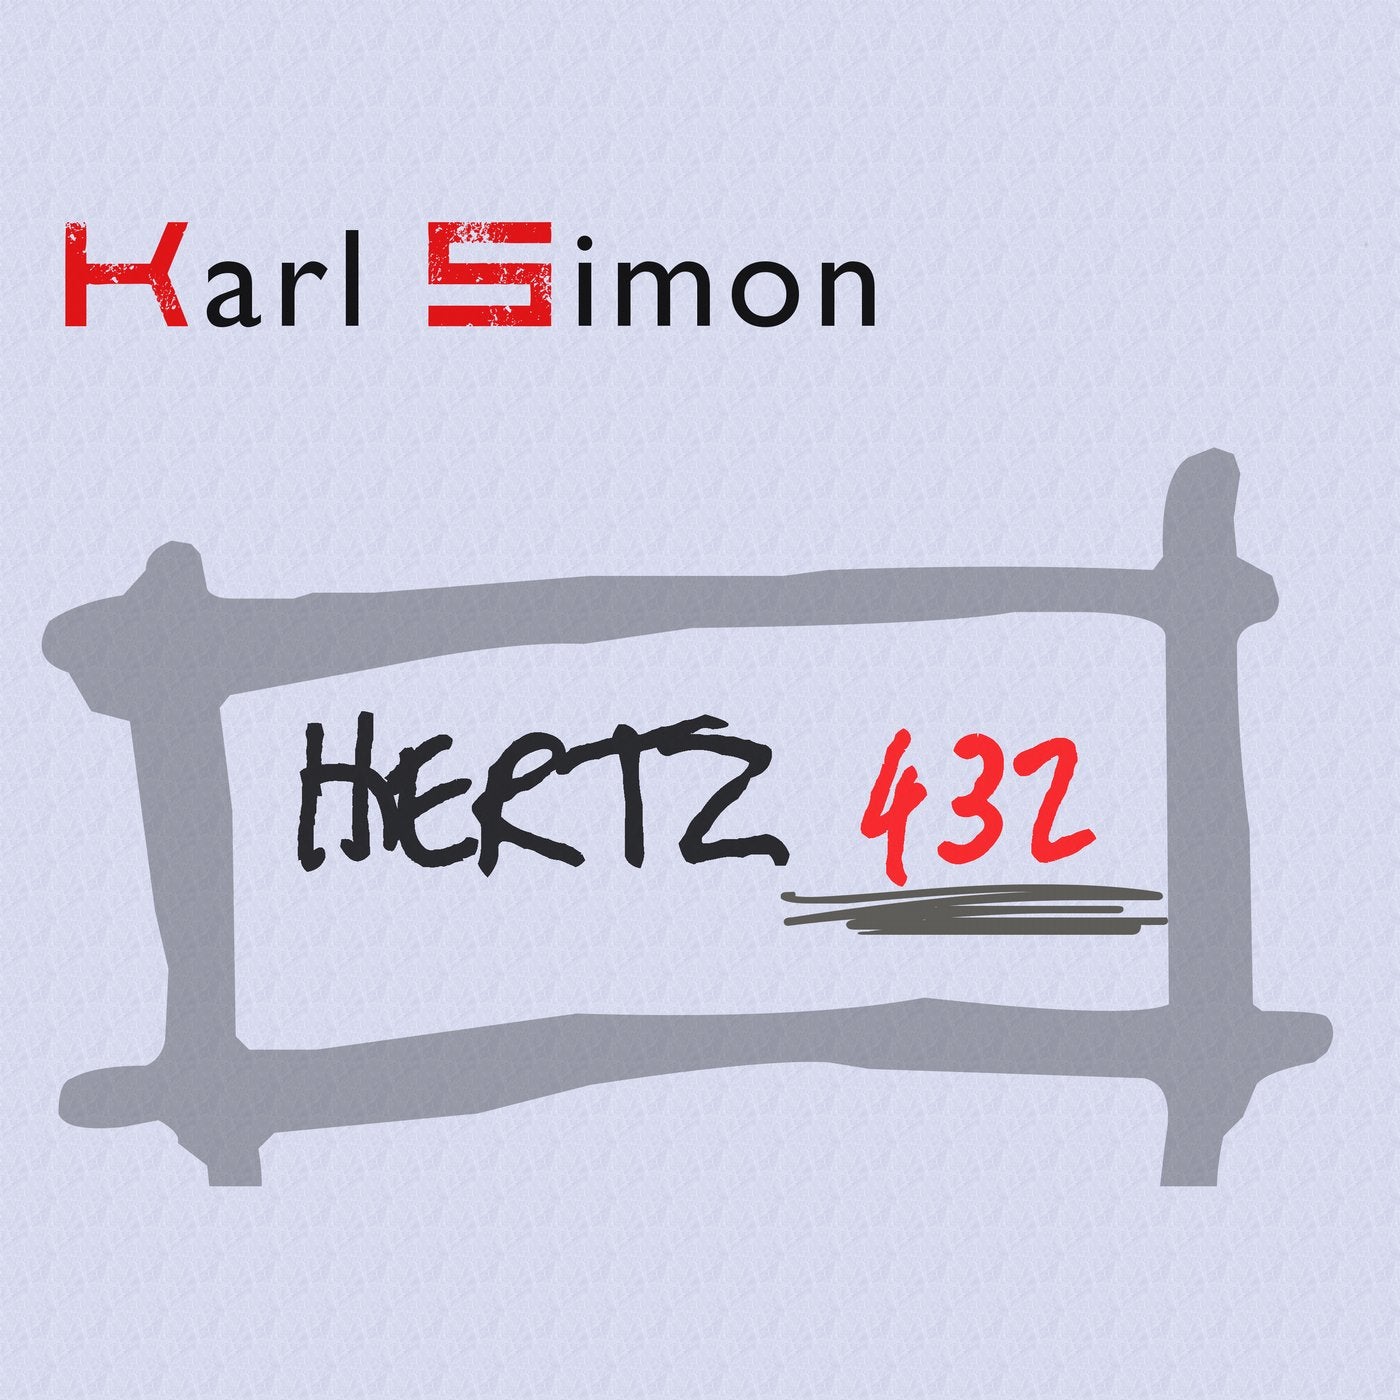 Hertz 432